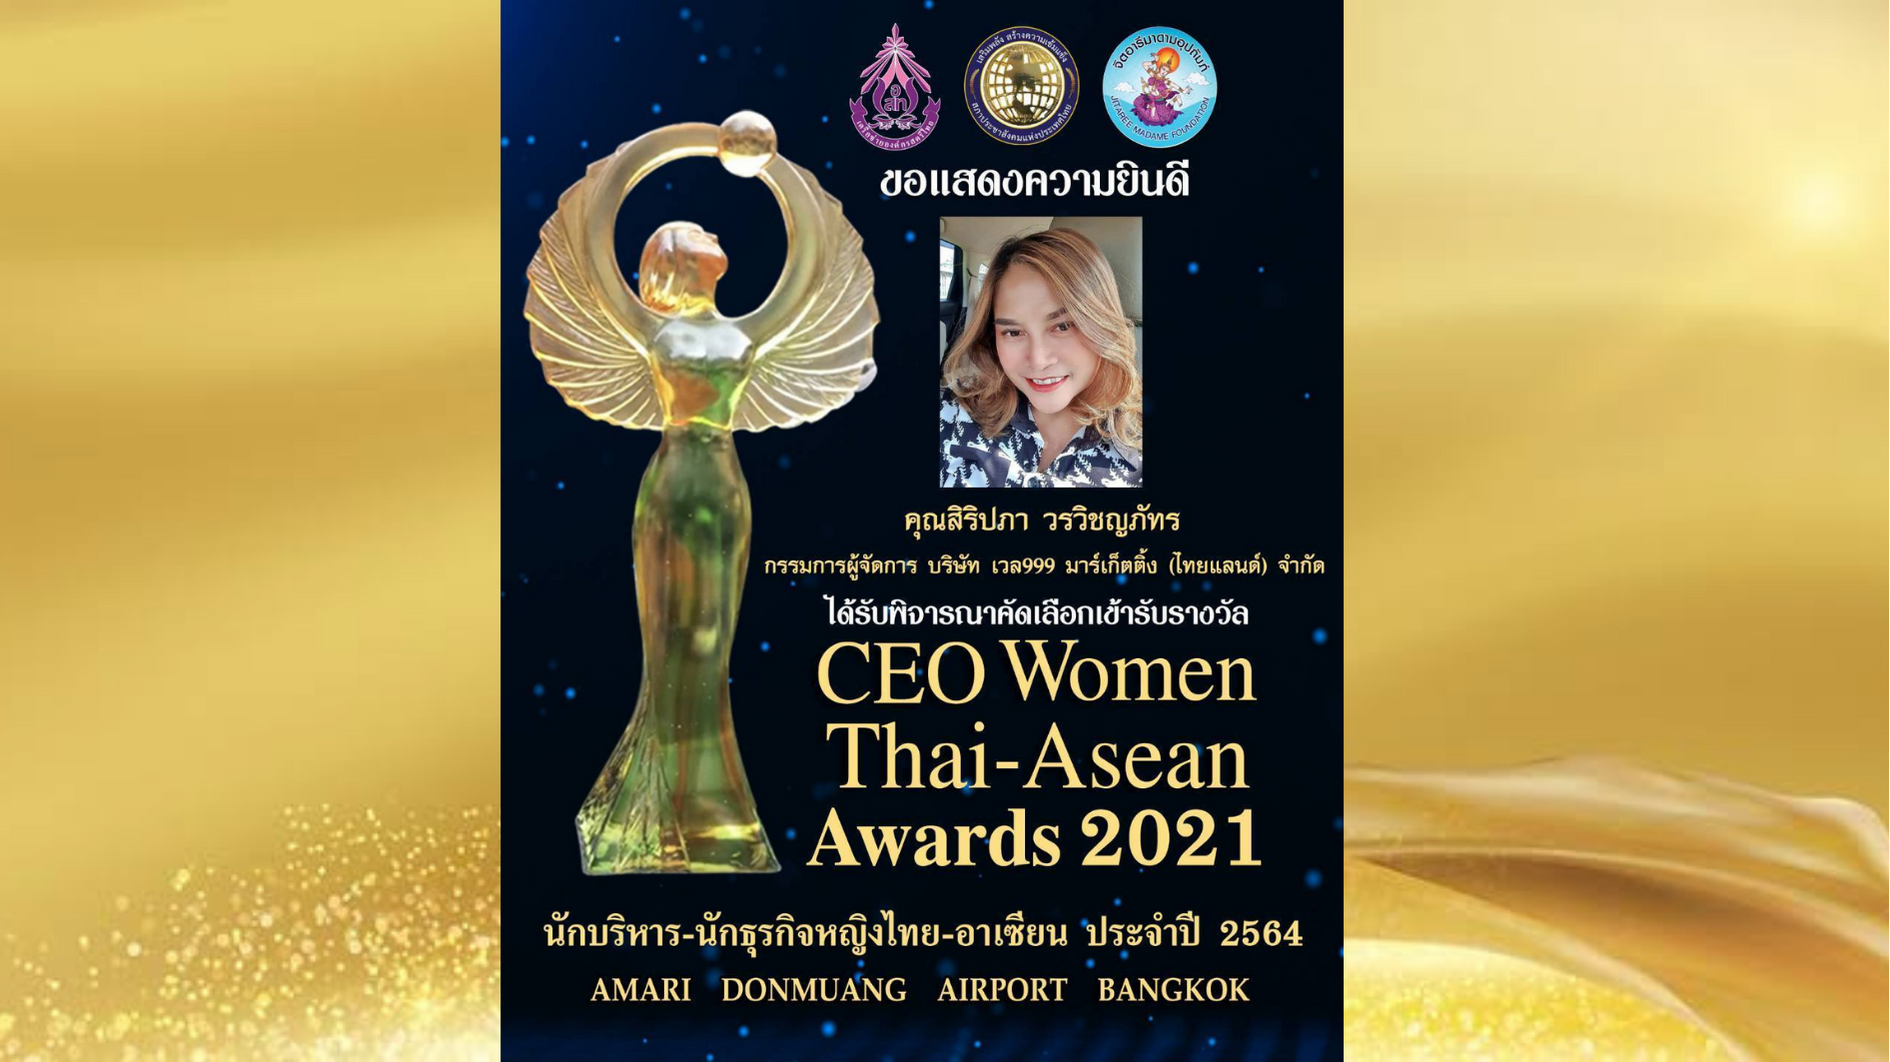 ขอแสดงความยินดี คุณสิริปภา  วรวิชญภัทร กรรมการผู้จัดการบริษัท เวล999 มาร์เก็ตติ้ง จำกัด ได้รับการคัดเลือกเข้ารับรางวัล CEO Women Thai-Asian Aword 2021...